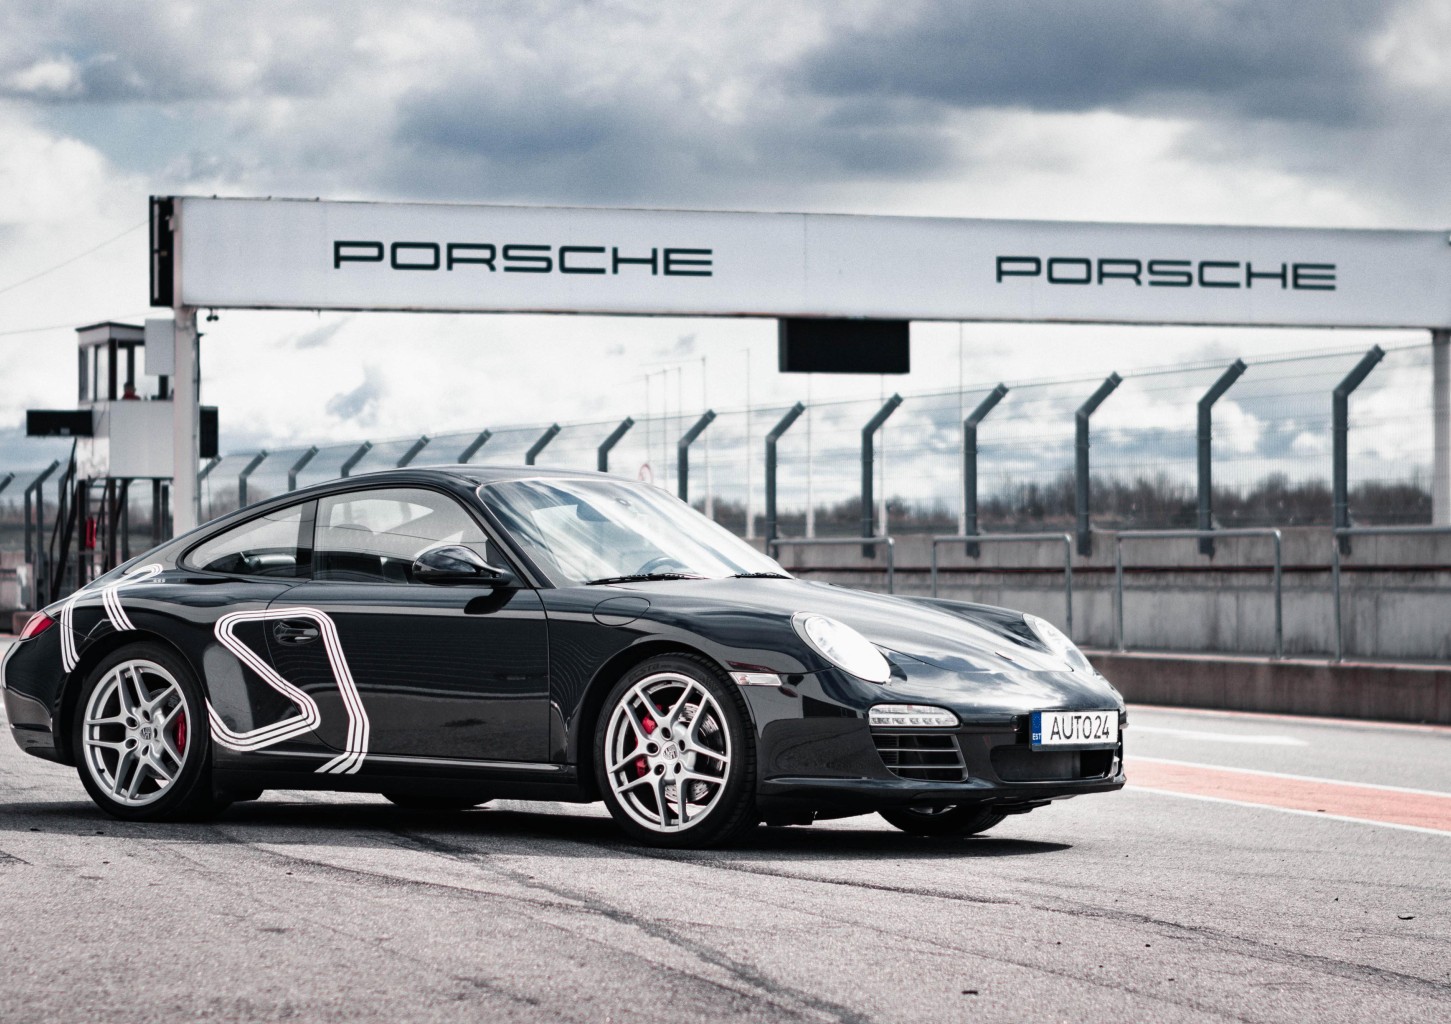 Захватывающая езда за рулем Porsche 911